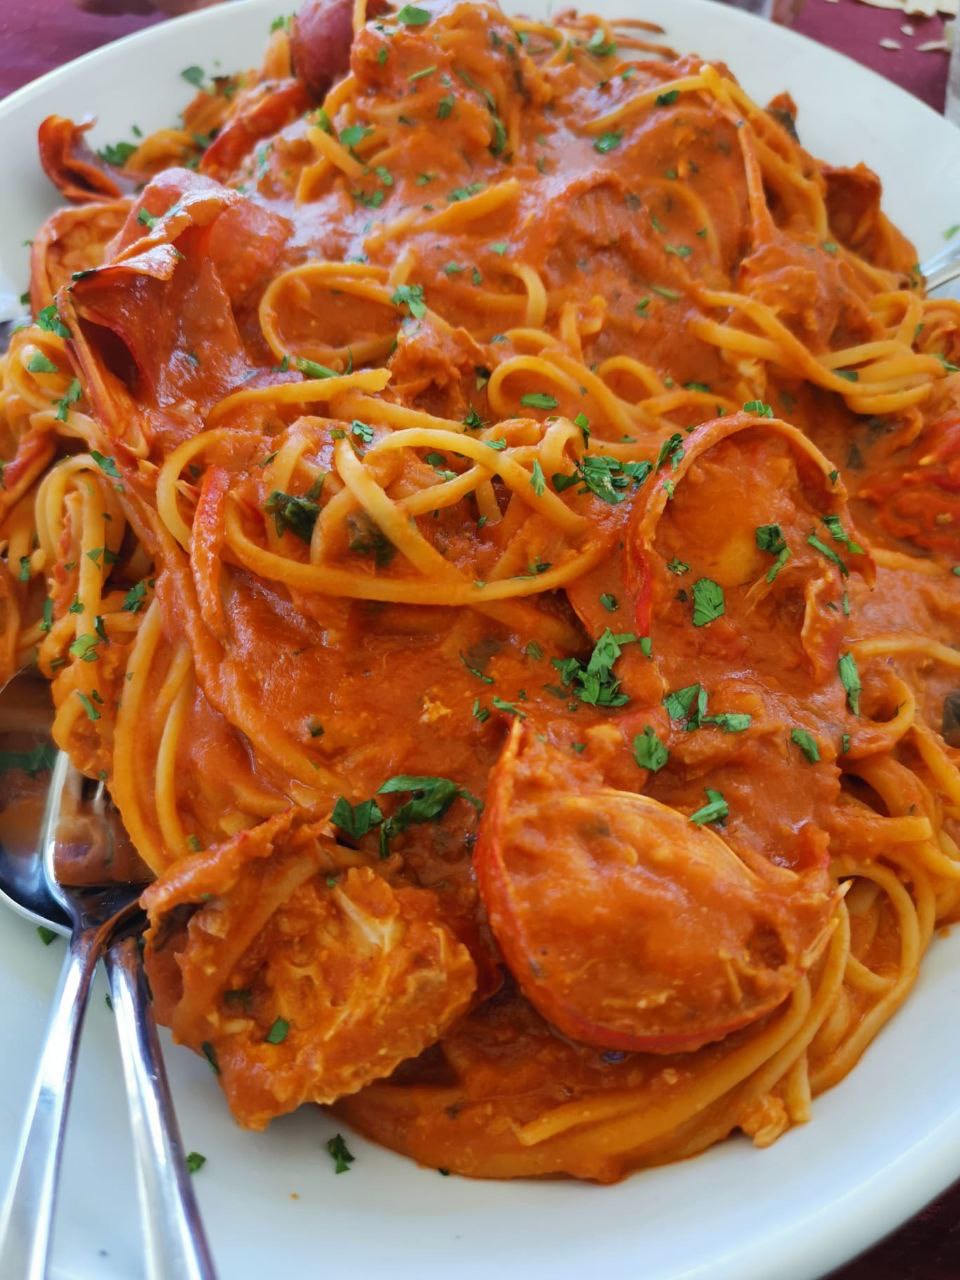 Spaghetti aragosta